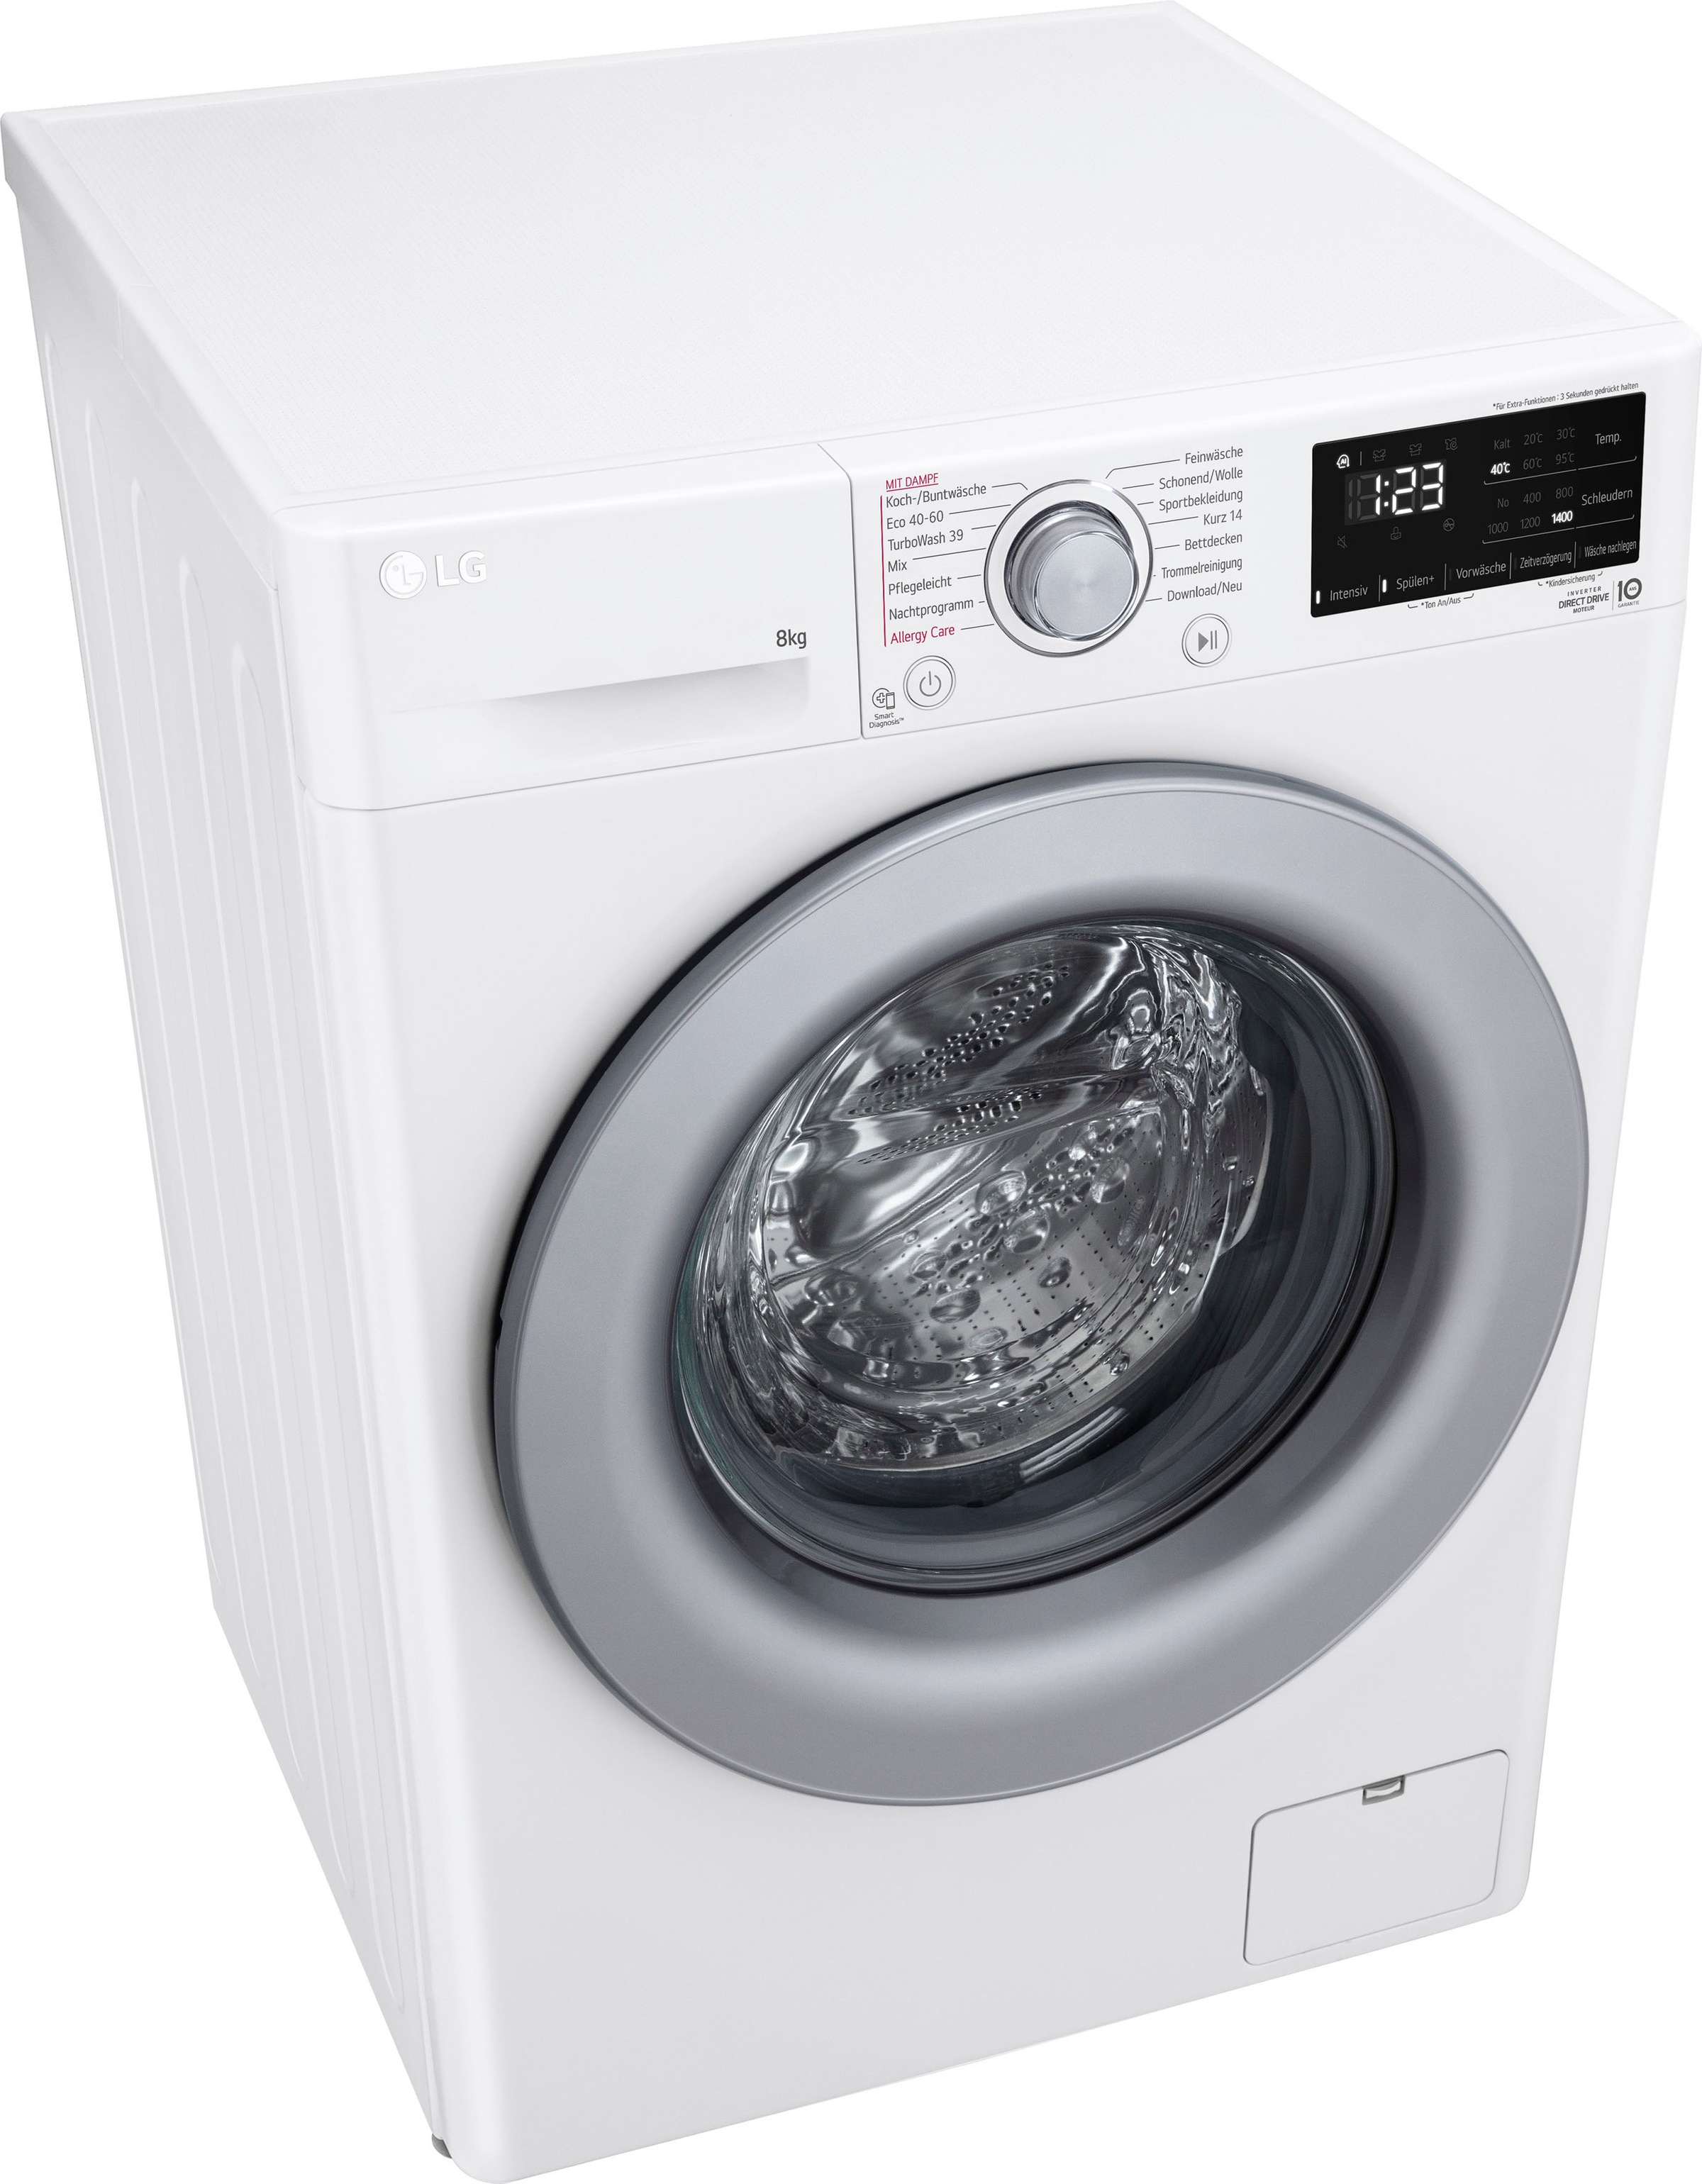 LG Waschmaschine »F4WV3284«, Serie 3, U/min F4WV3284, kg, 1400 bei OTTO bestellen 8